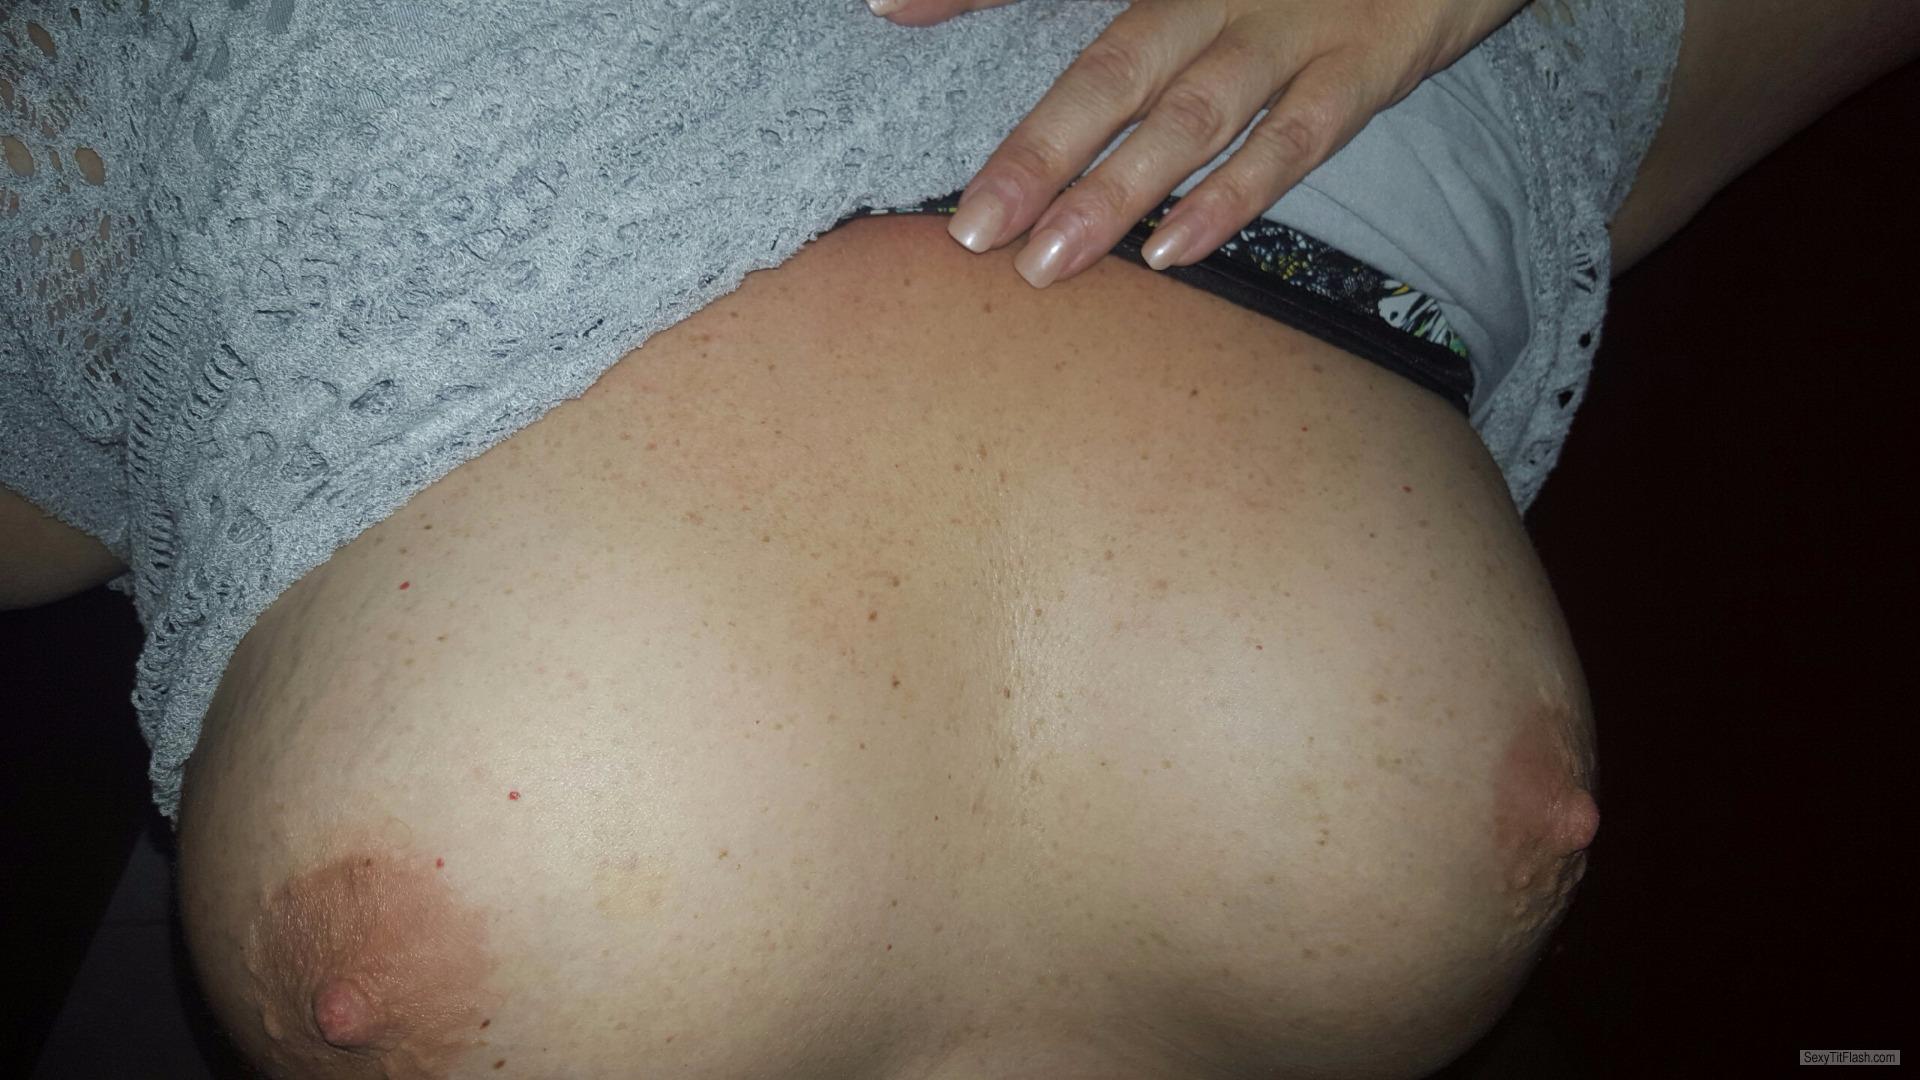 My Big Tits Selfie by Mandee